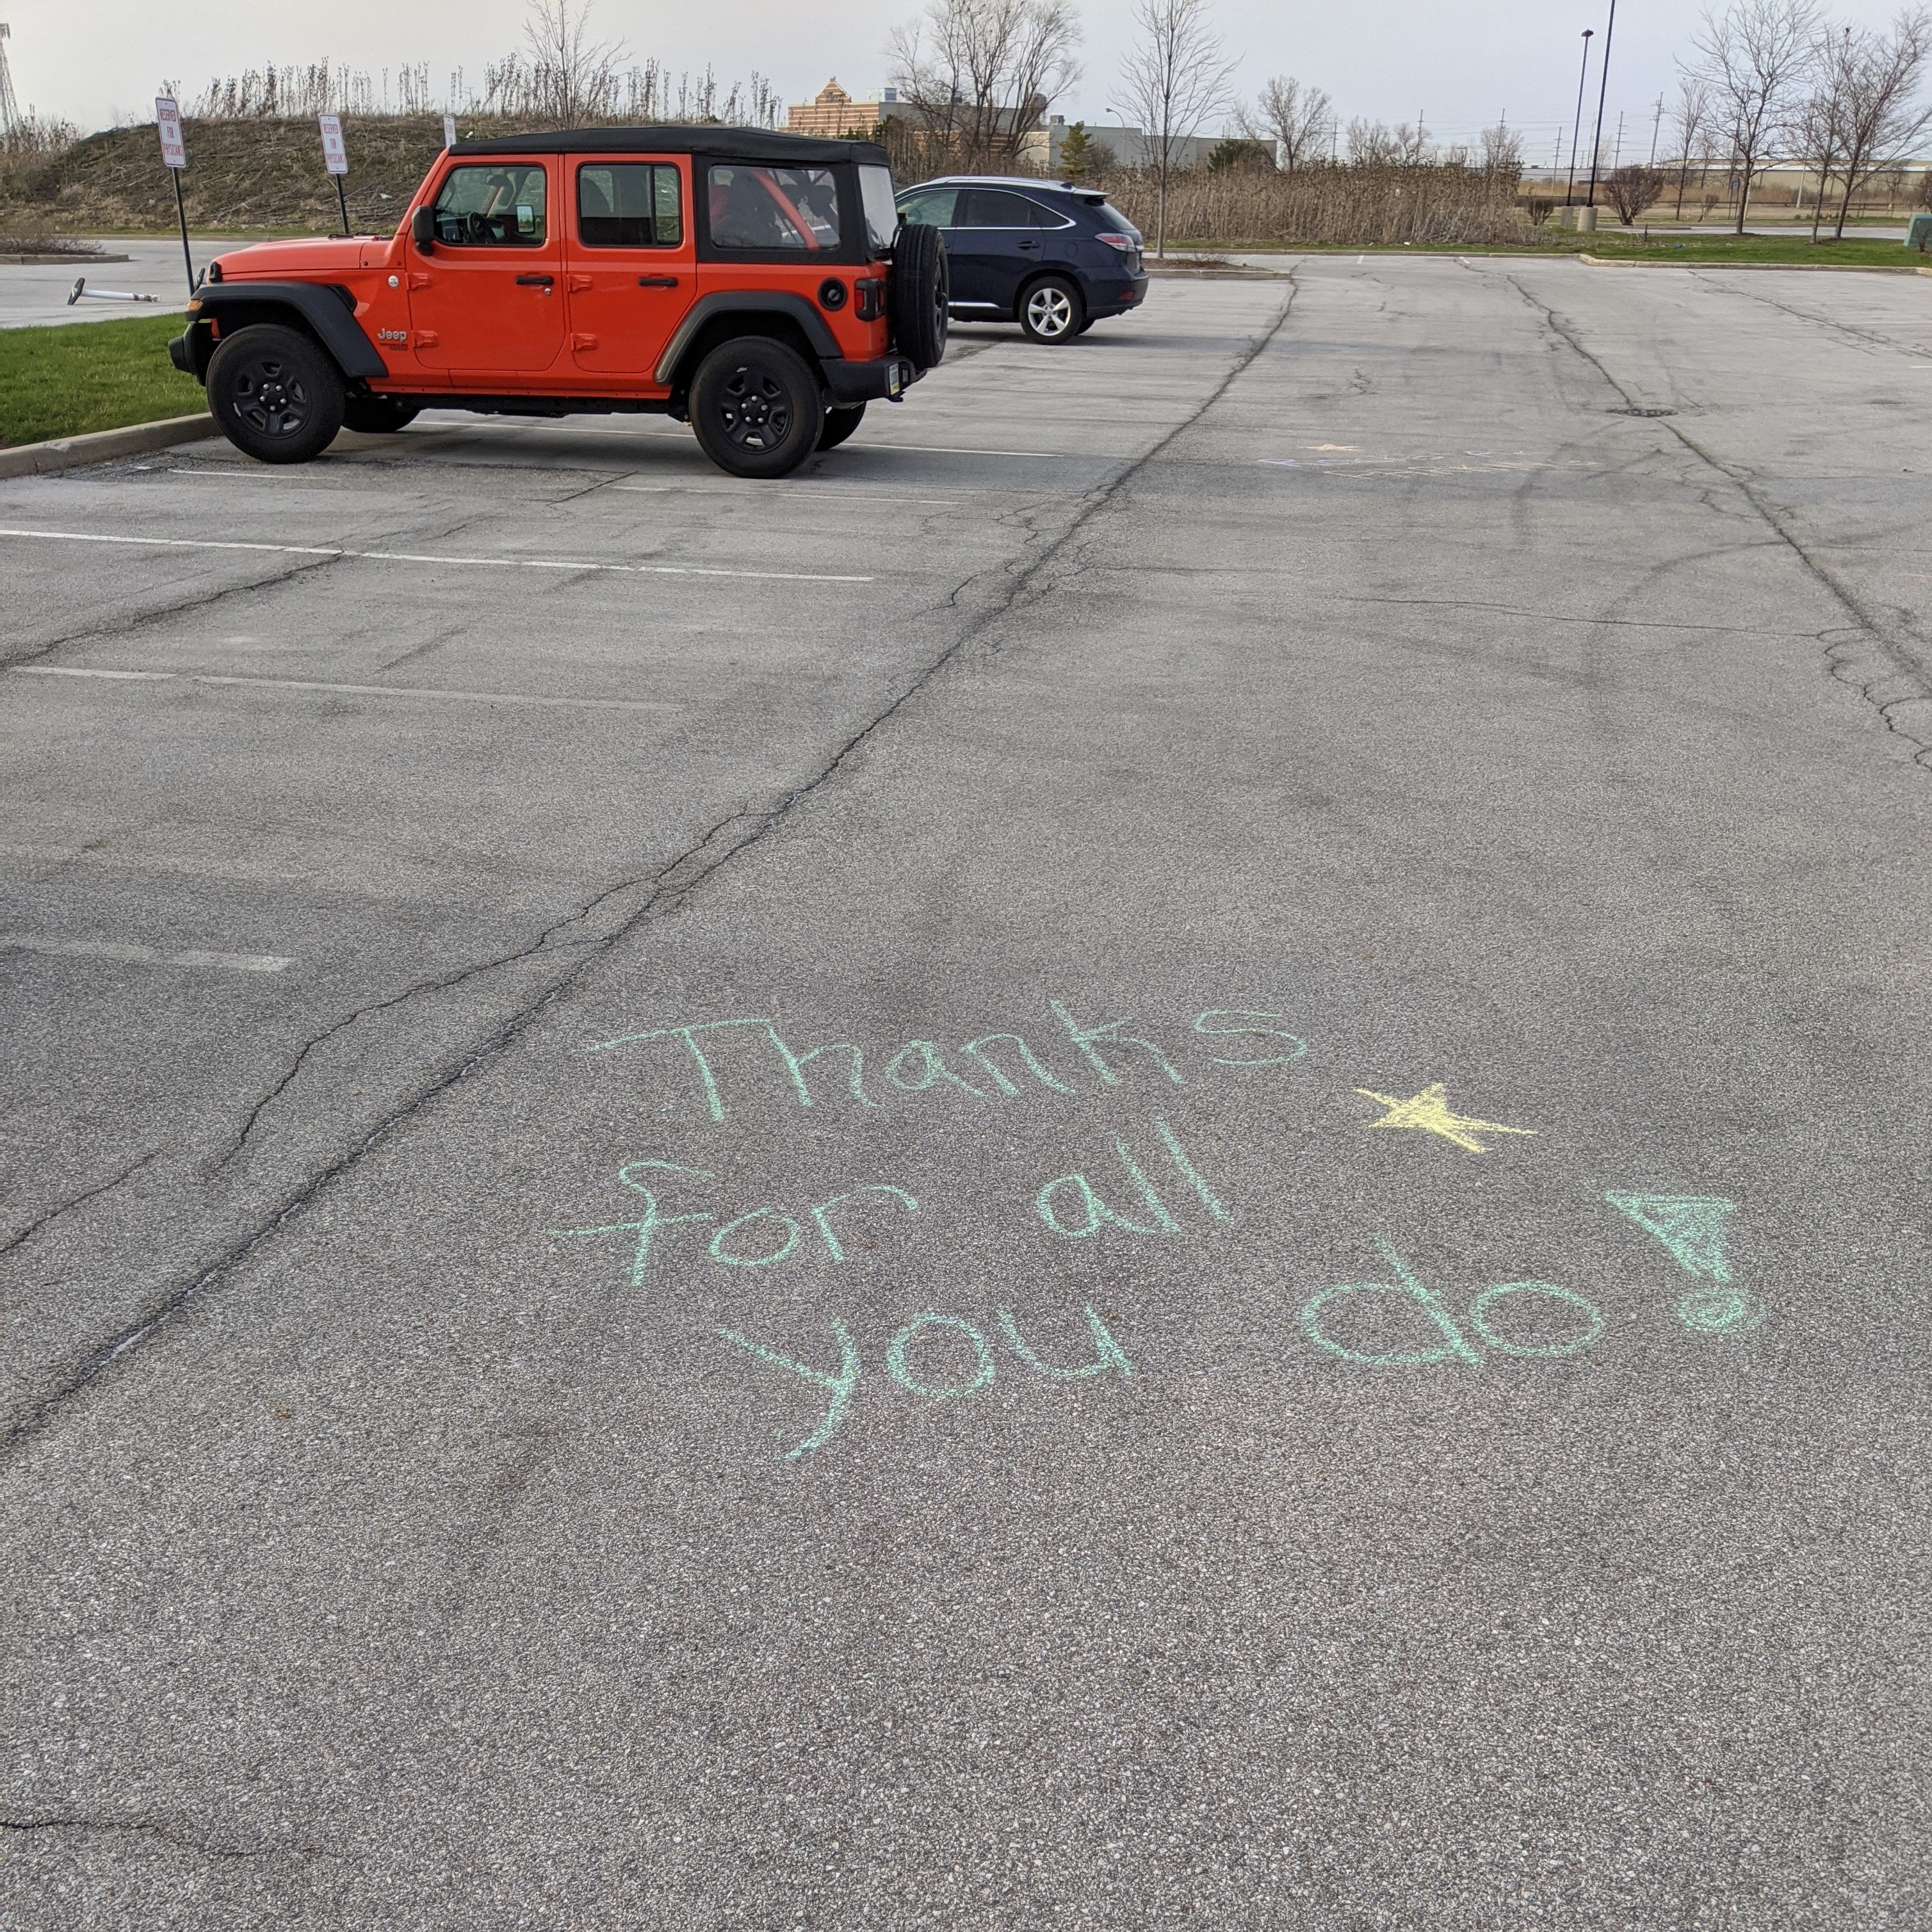 parking lot message